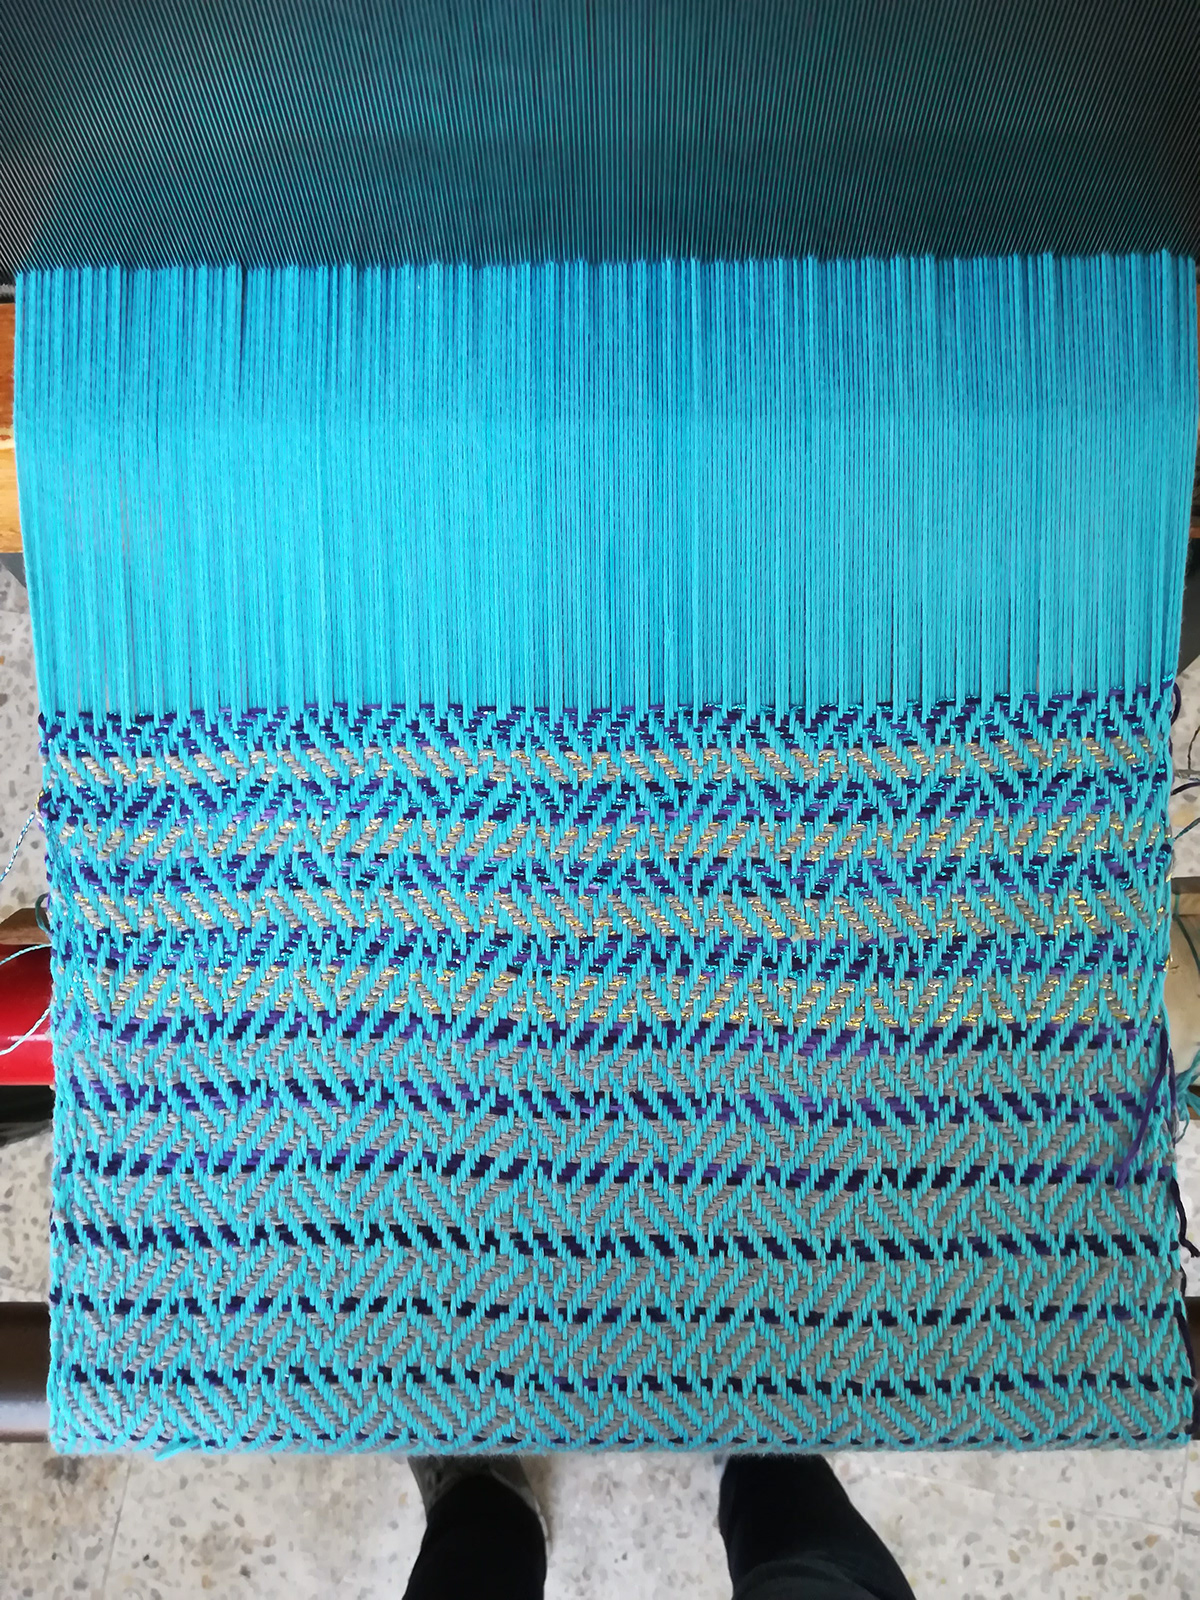 twill textile art crafts   fabric fiber handicrafts pattern weaving Woven